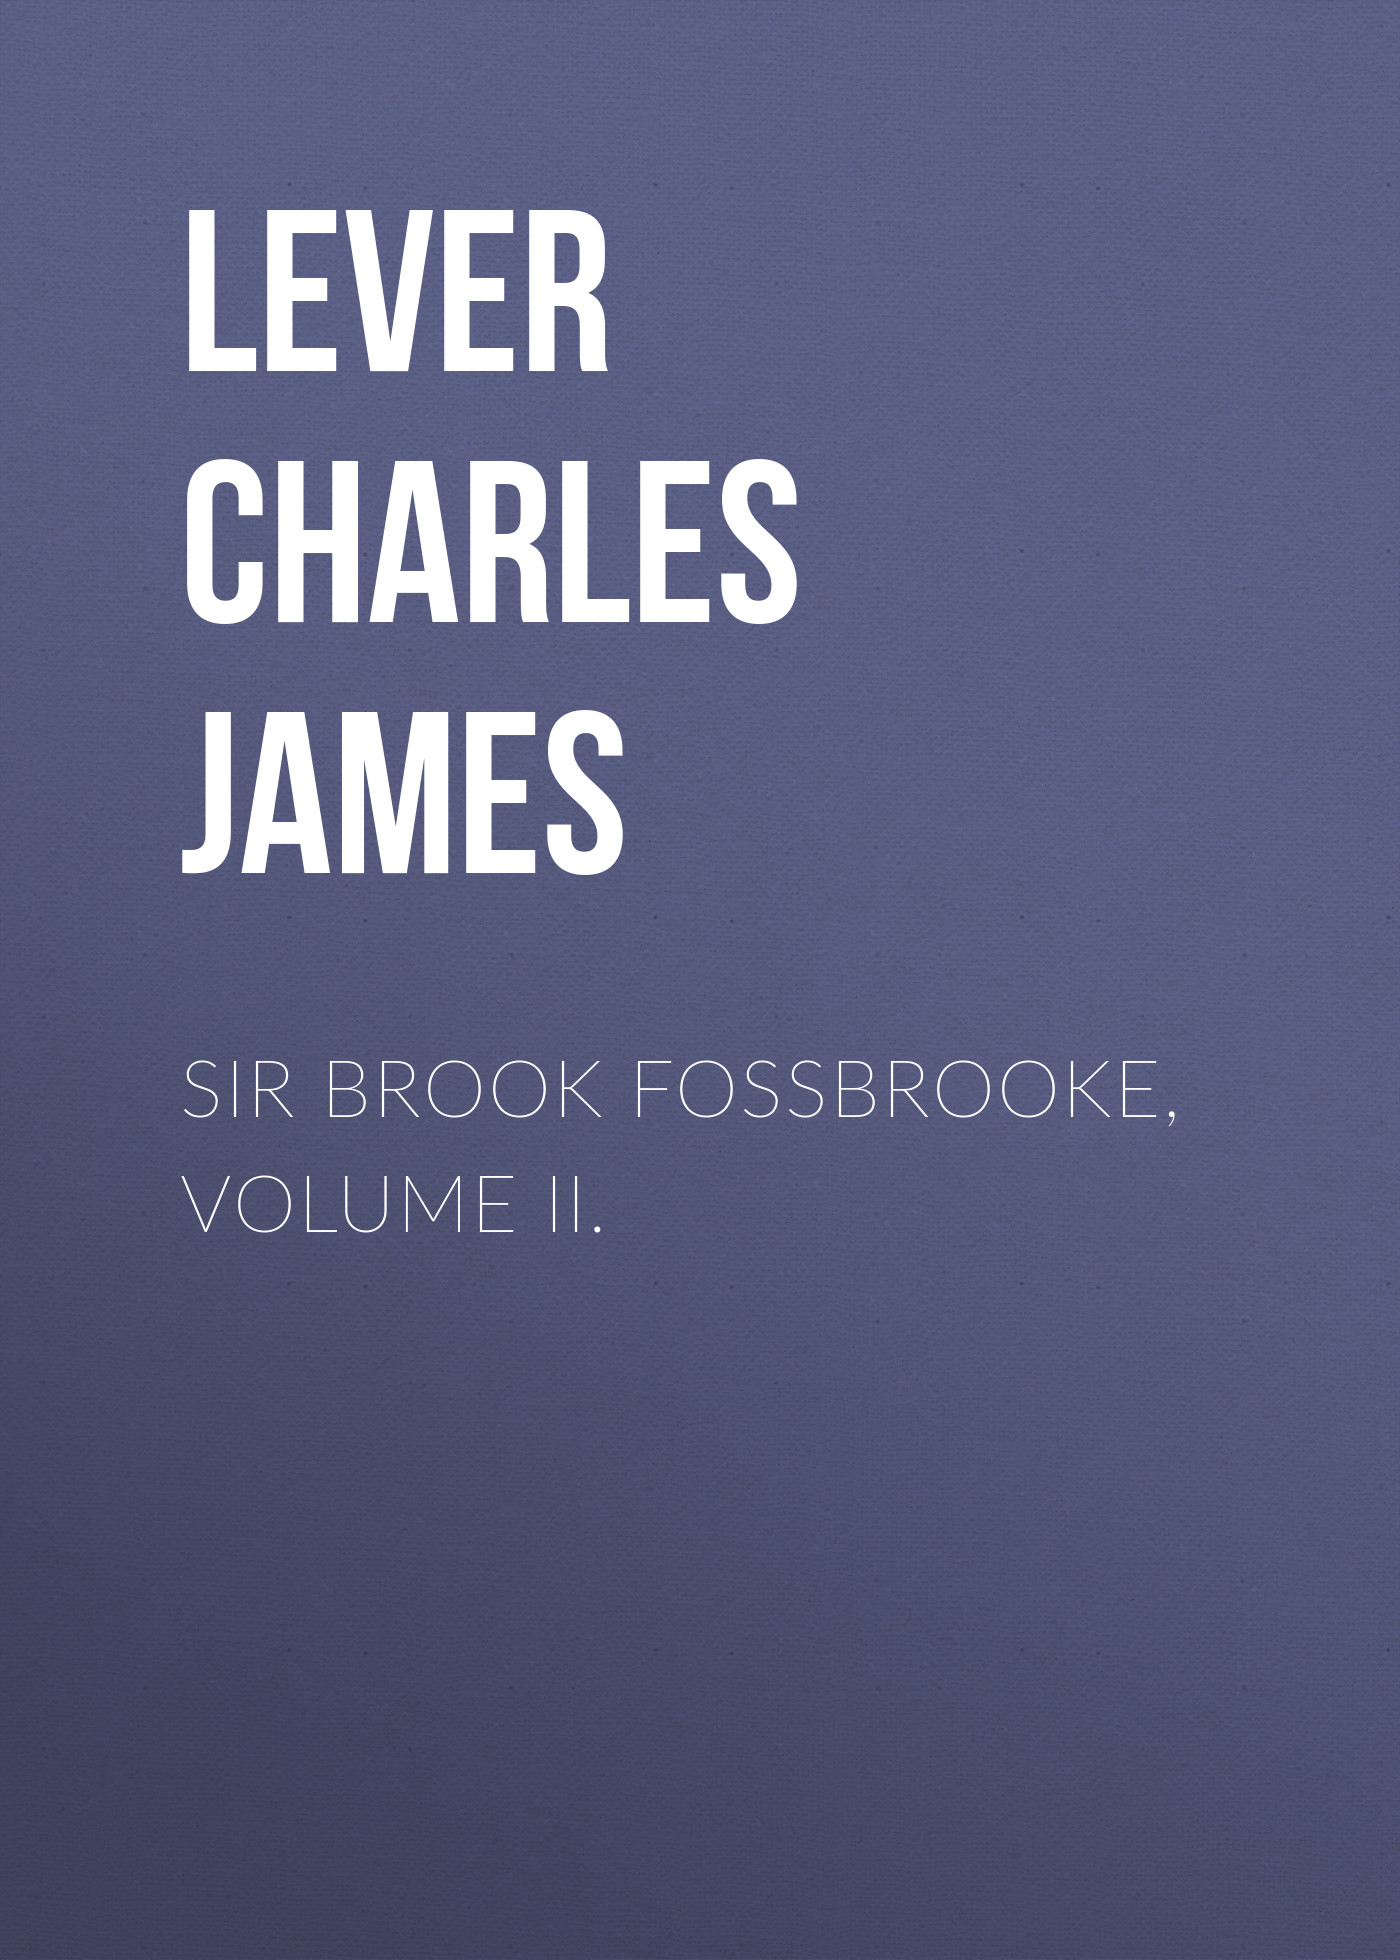 Книга Sir Brook Fossbrooke, Volume II. из серии , созданная Charles Lever, может относится к жанру Литература 19 века, Зарубежная старинная литература, Зарубежная классика. Стоимость электронной книги Sir Brook Fossbrooke, Volume II. с идентификатором 25451228 составляет 0 руб.